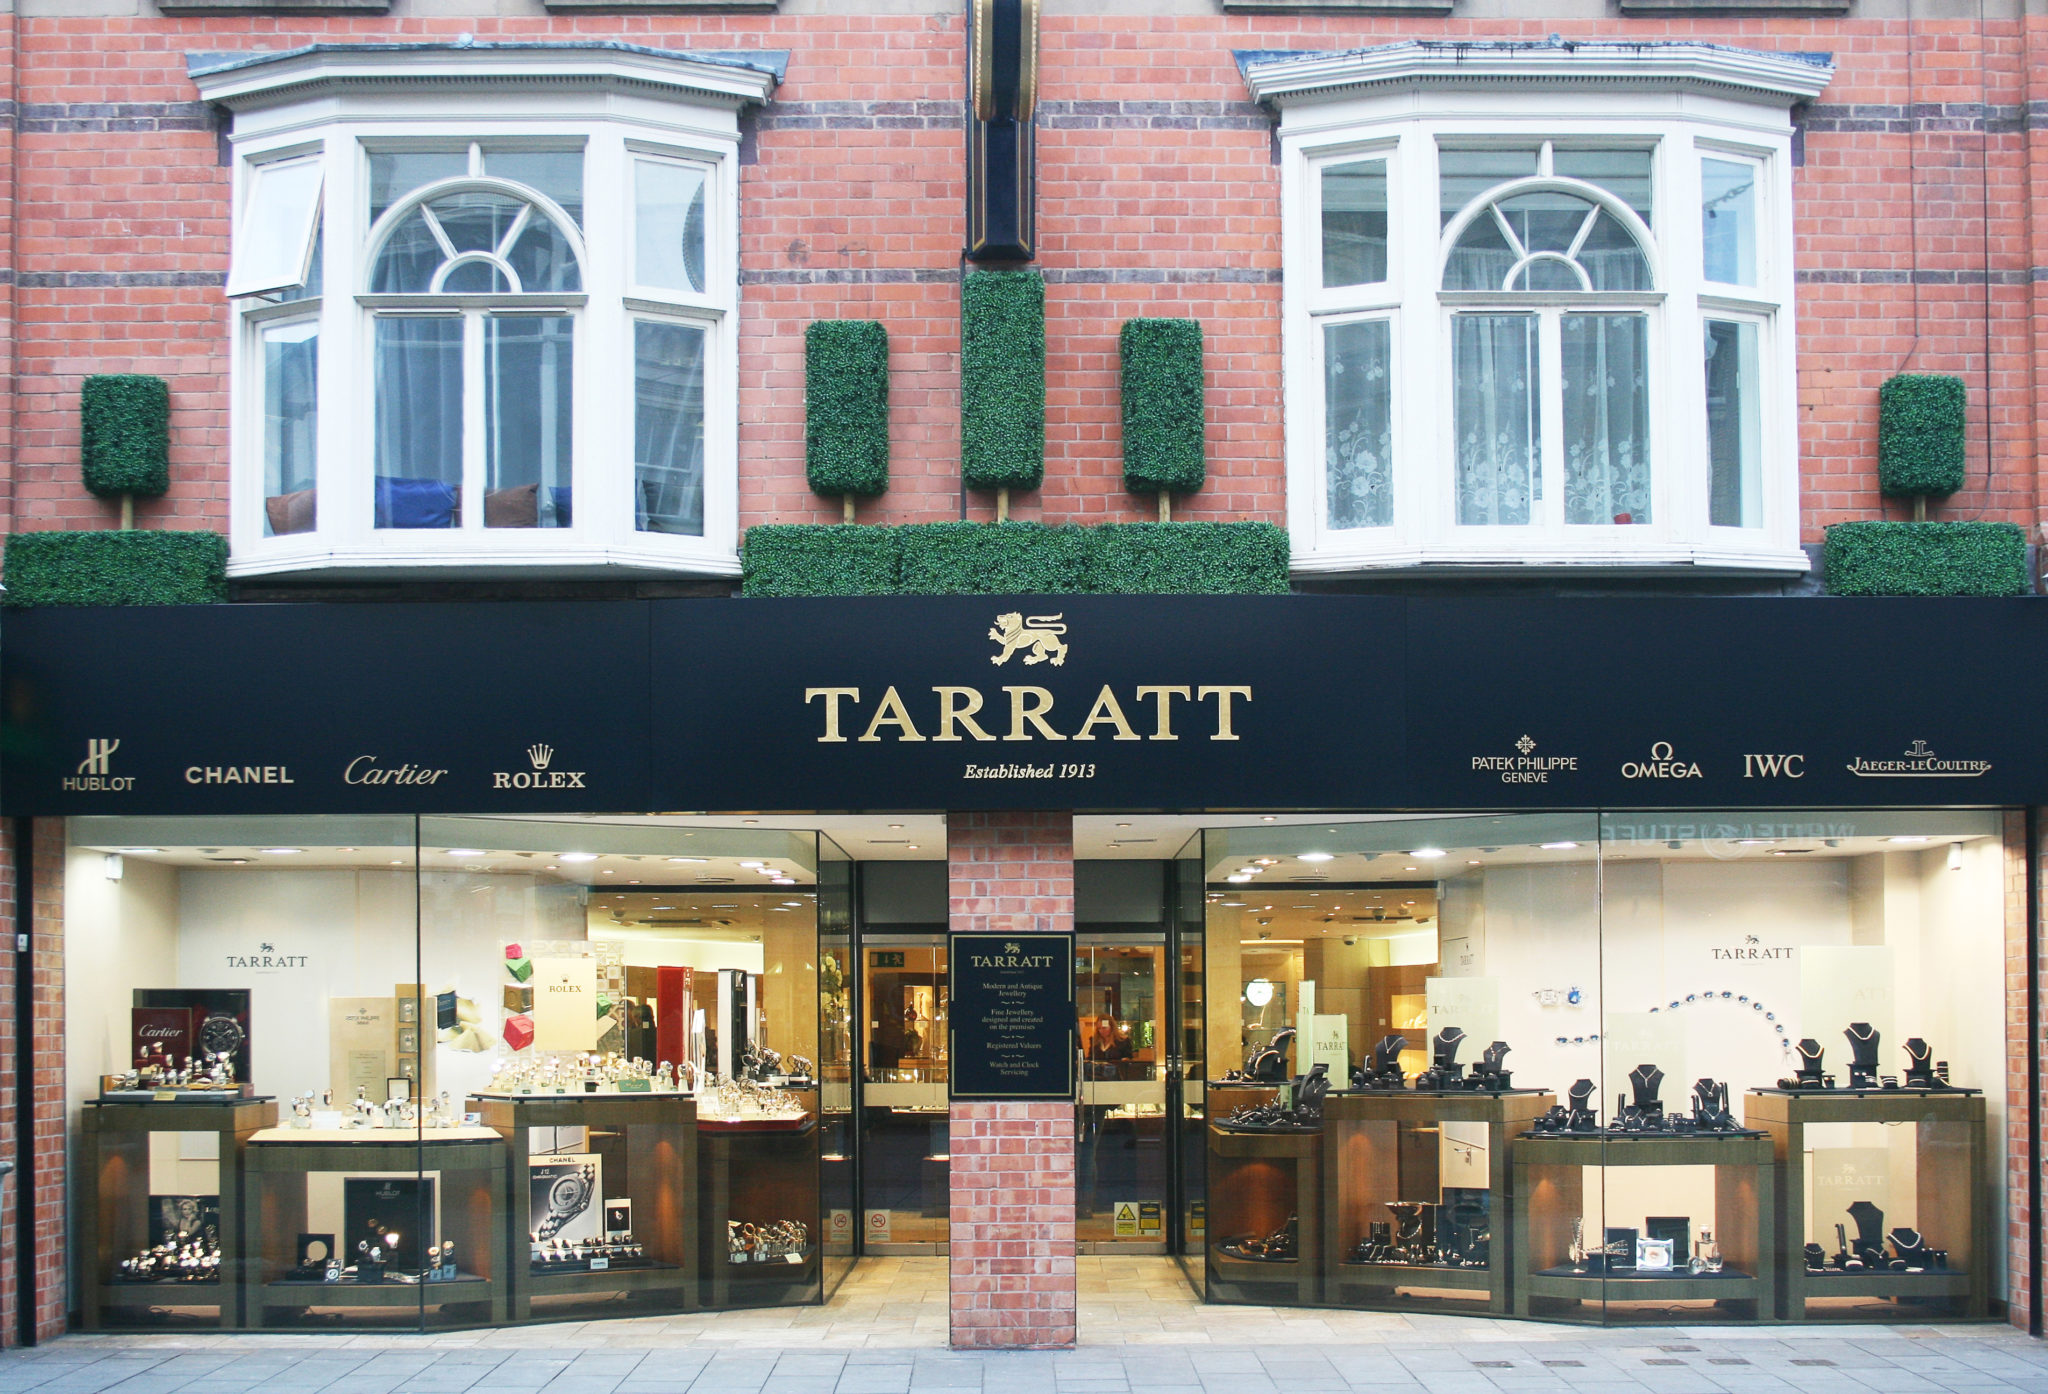 Tarratt shop front 02. 10. 17